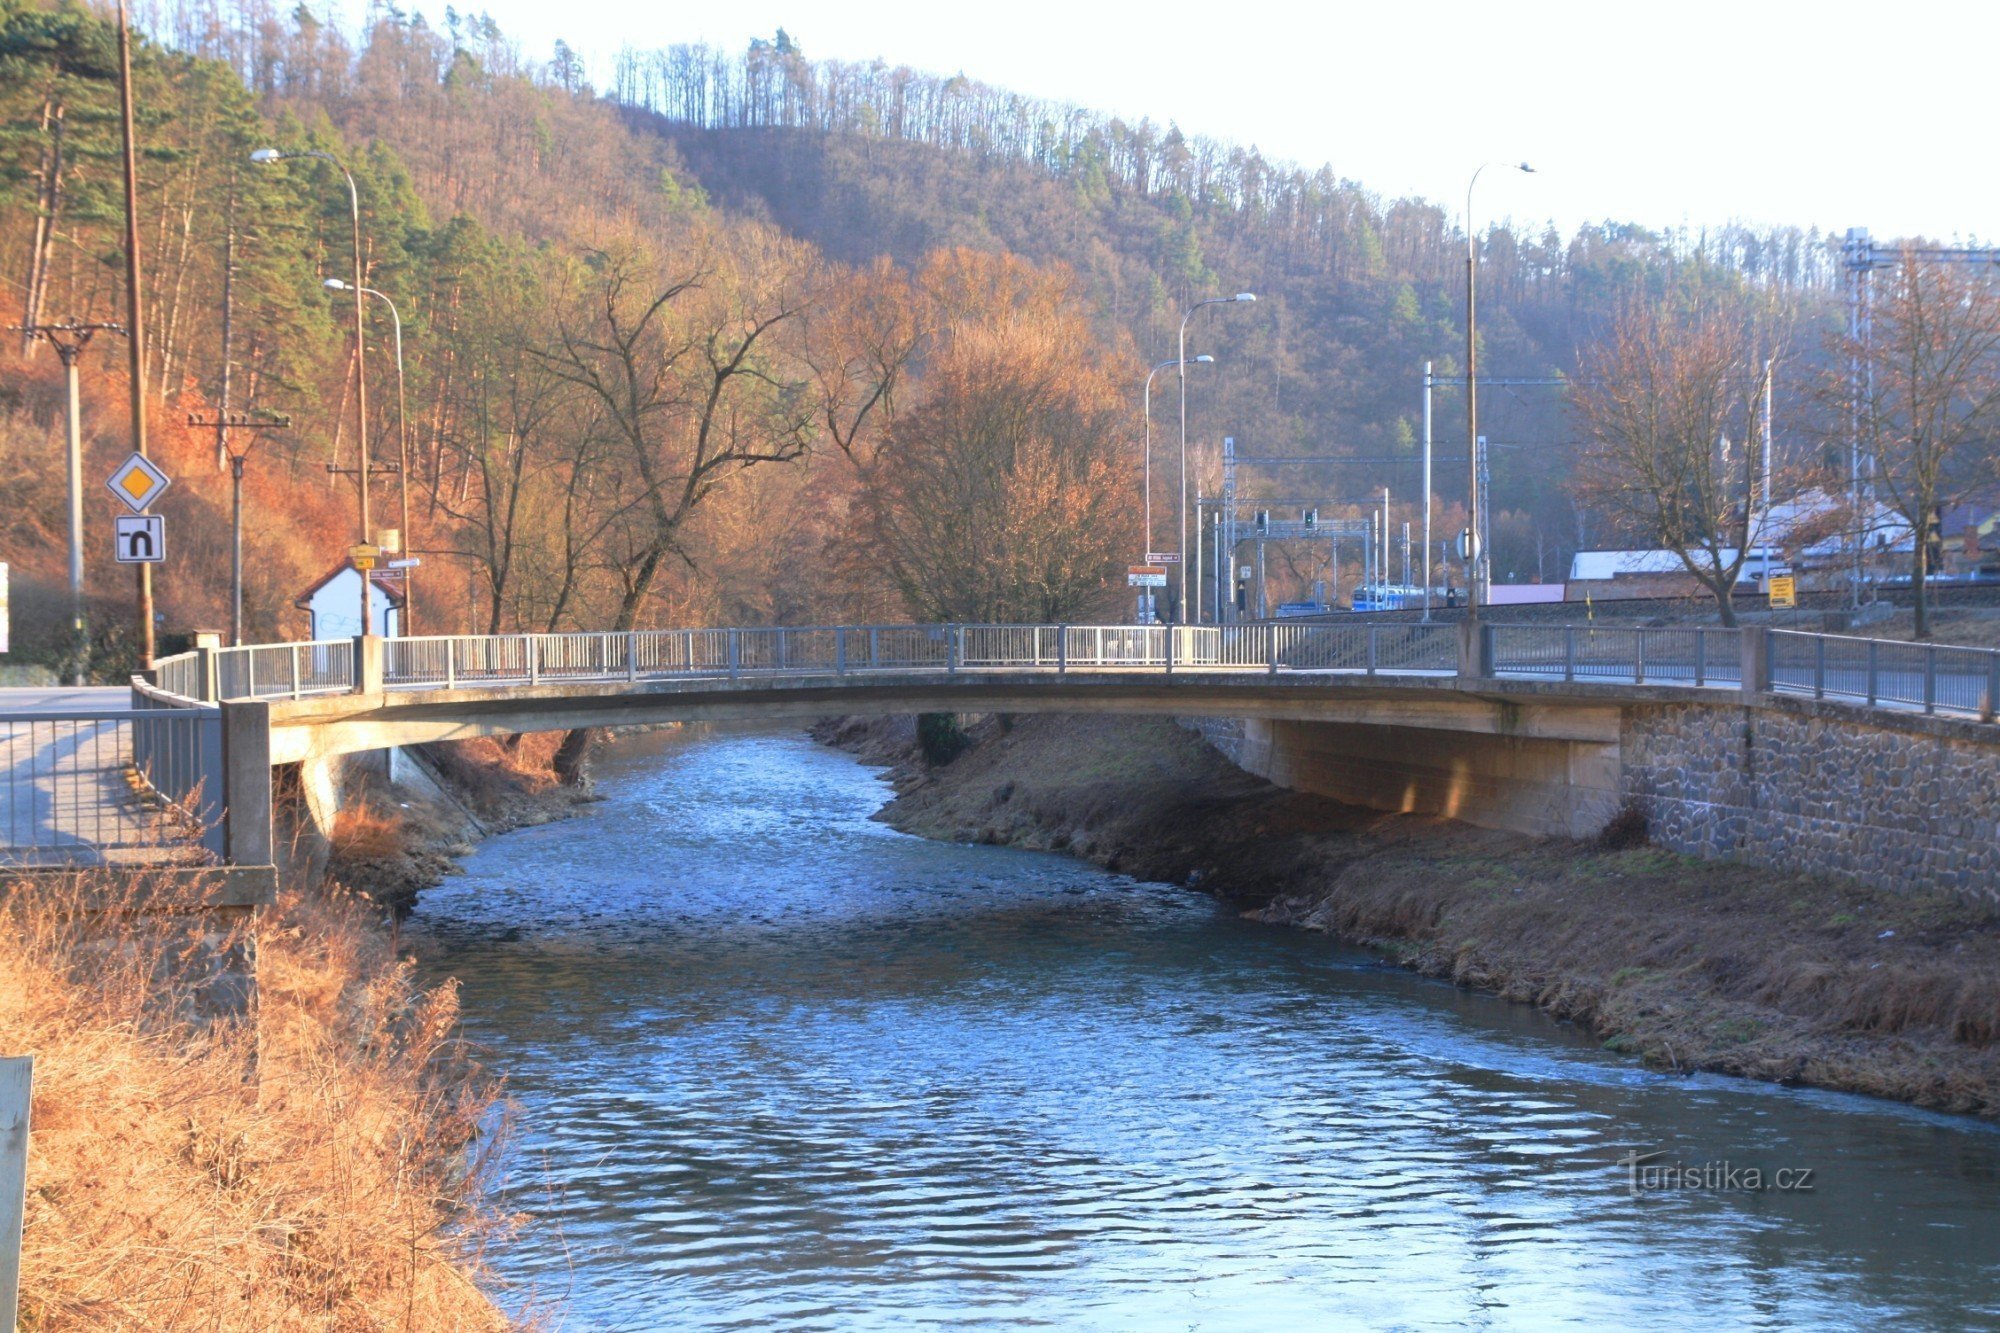 Podul peste râul Svitava lângă Sokolovna